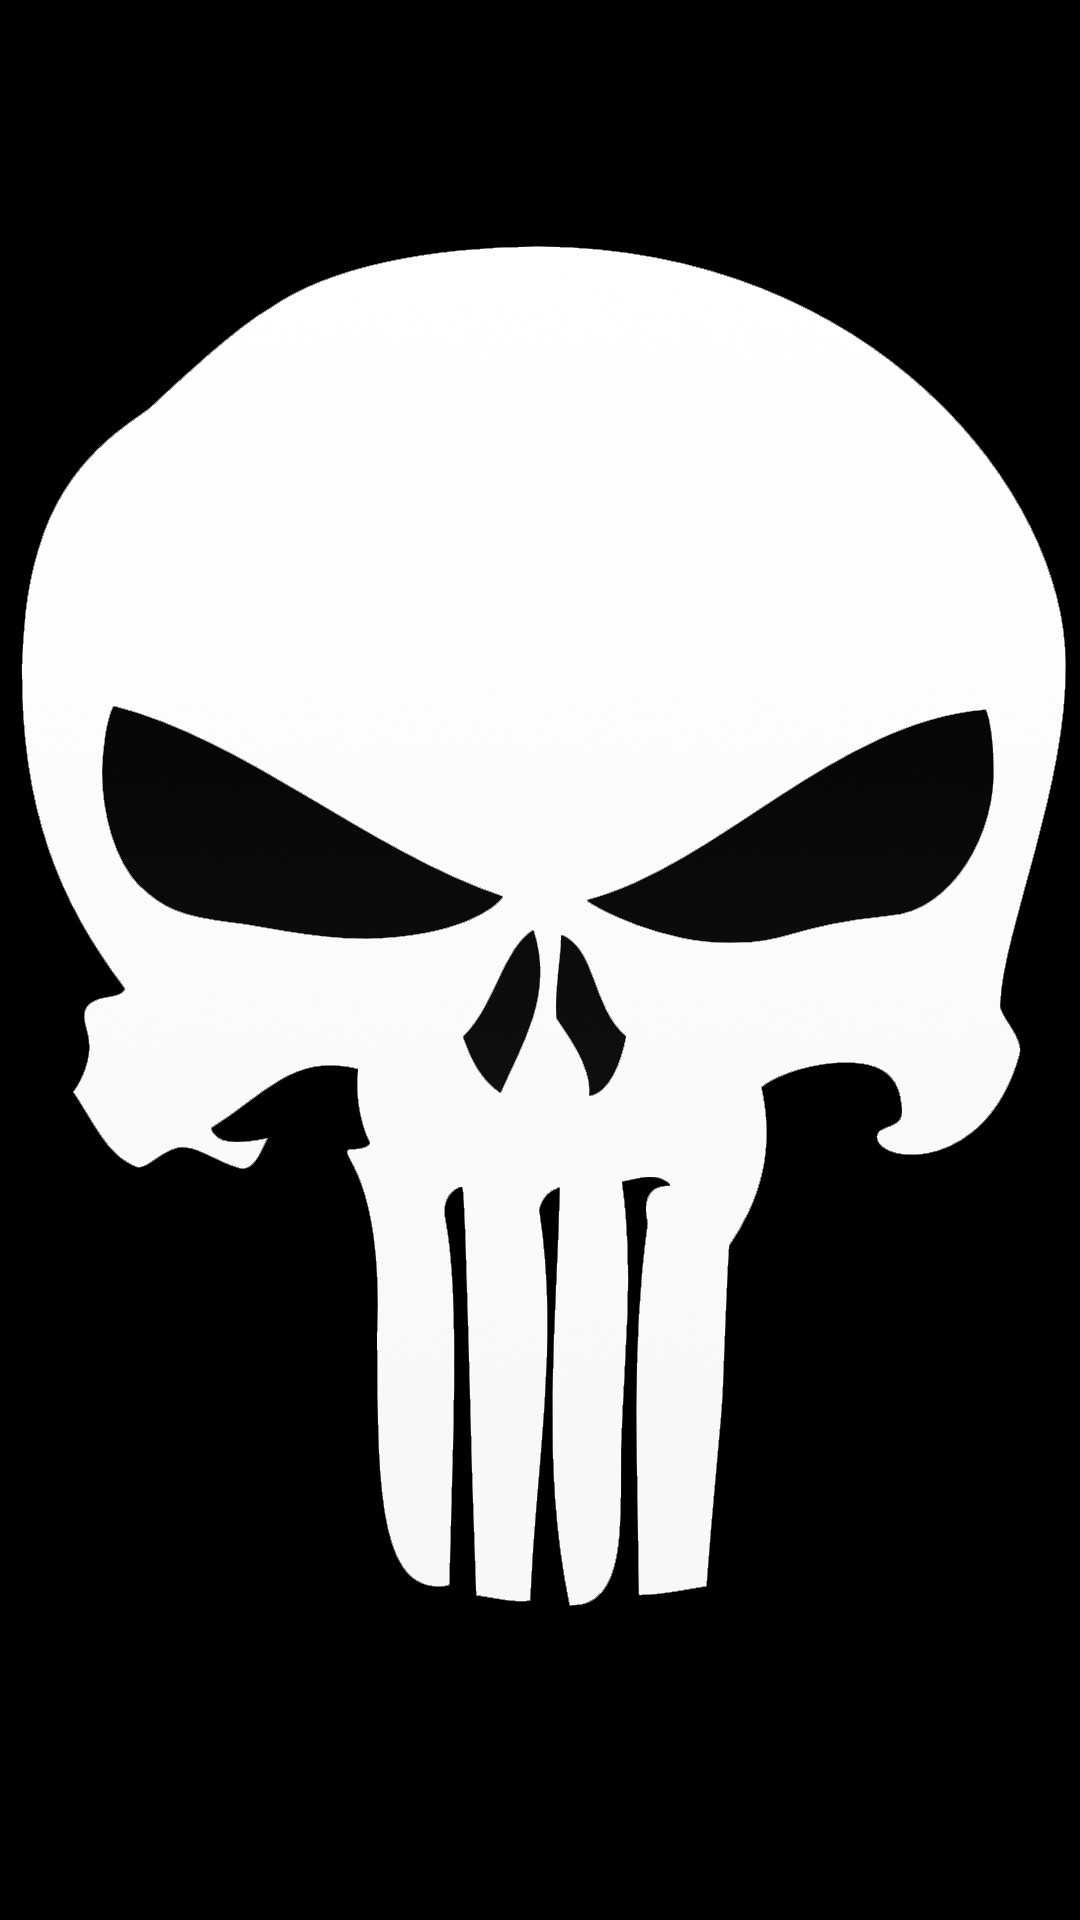 The Punisher Logo Wallpaper - Punisher Skull Png - HD Wallpaper 